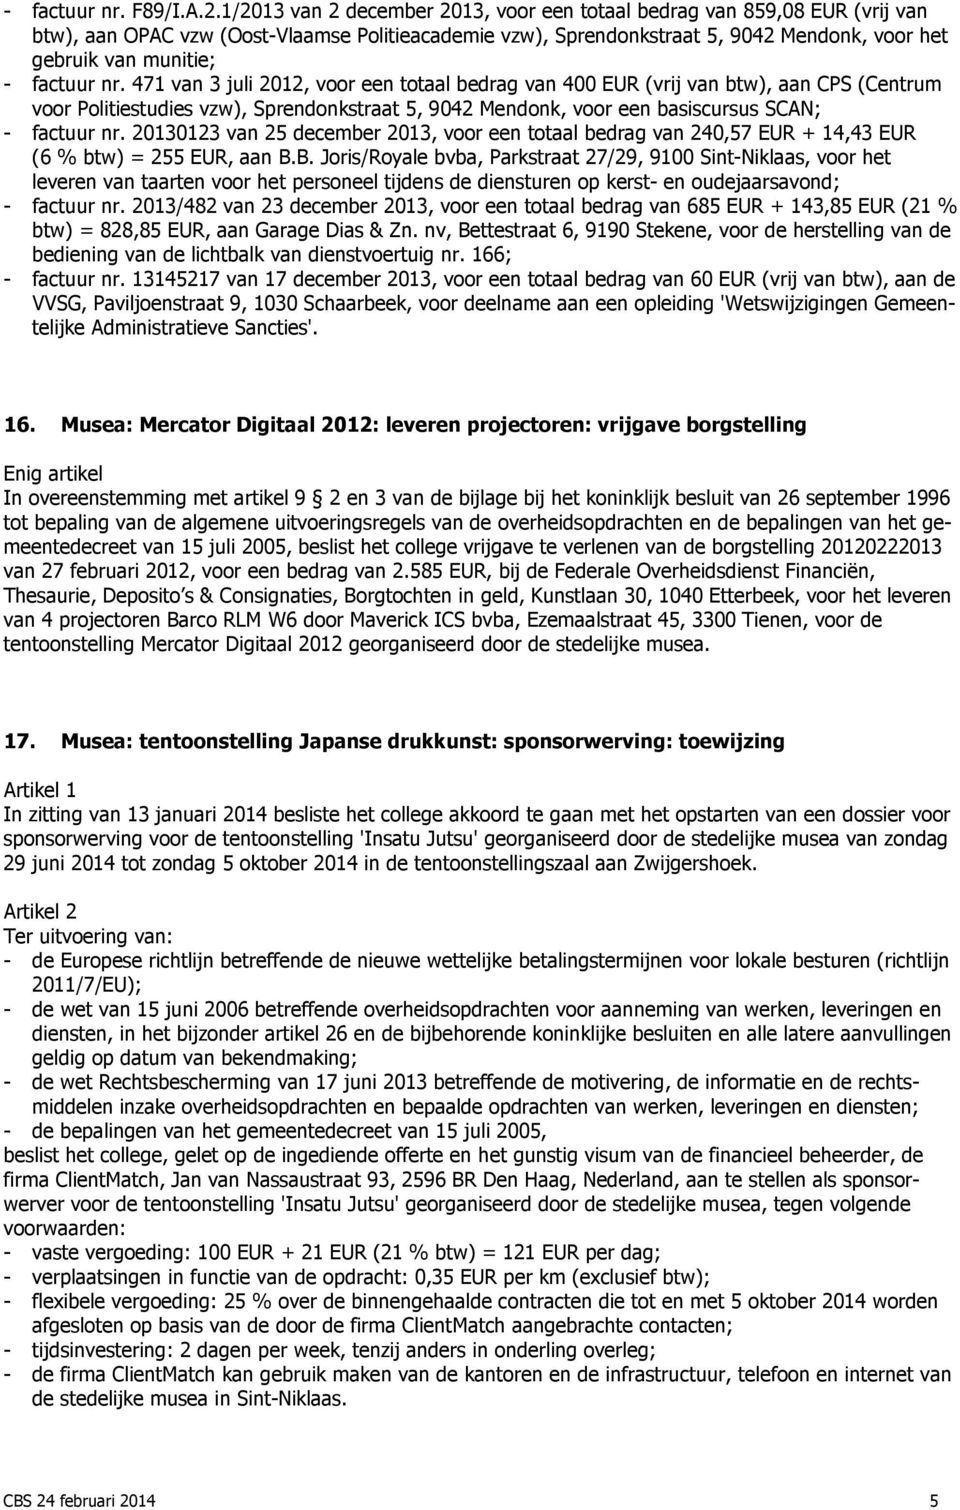 factuur nr. 471 van 3 juli 2012, voor een totaal bedrag van 400 EUR (vrij van btw), aan CPS (Centrum voor Politiestudies vzw), Sprendonkstraat 5, 9042 Mendonk, voor een basiscursus SCAN; - factuur nr.